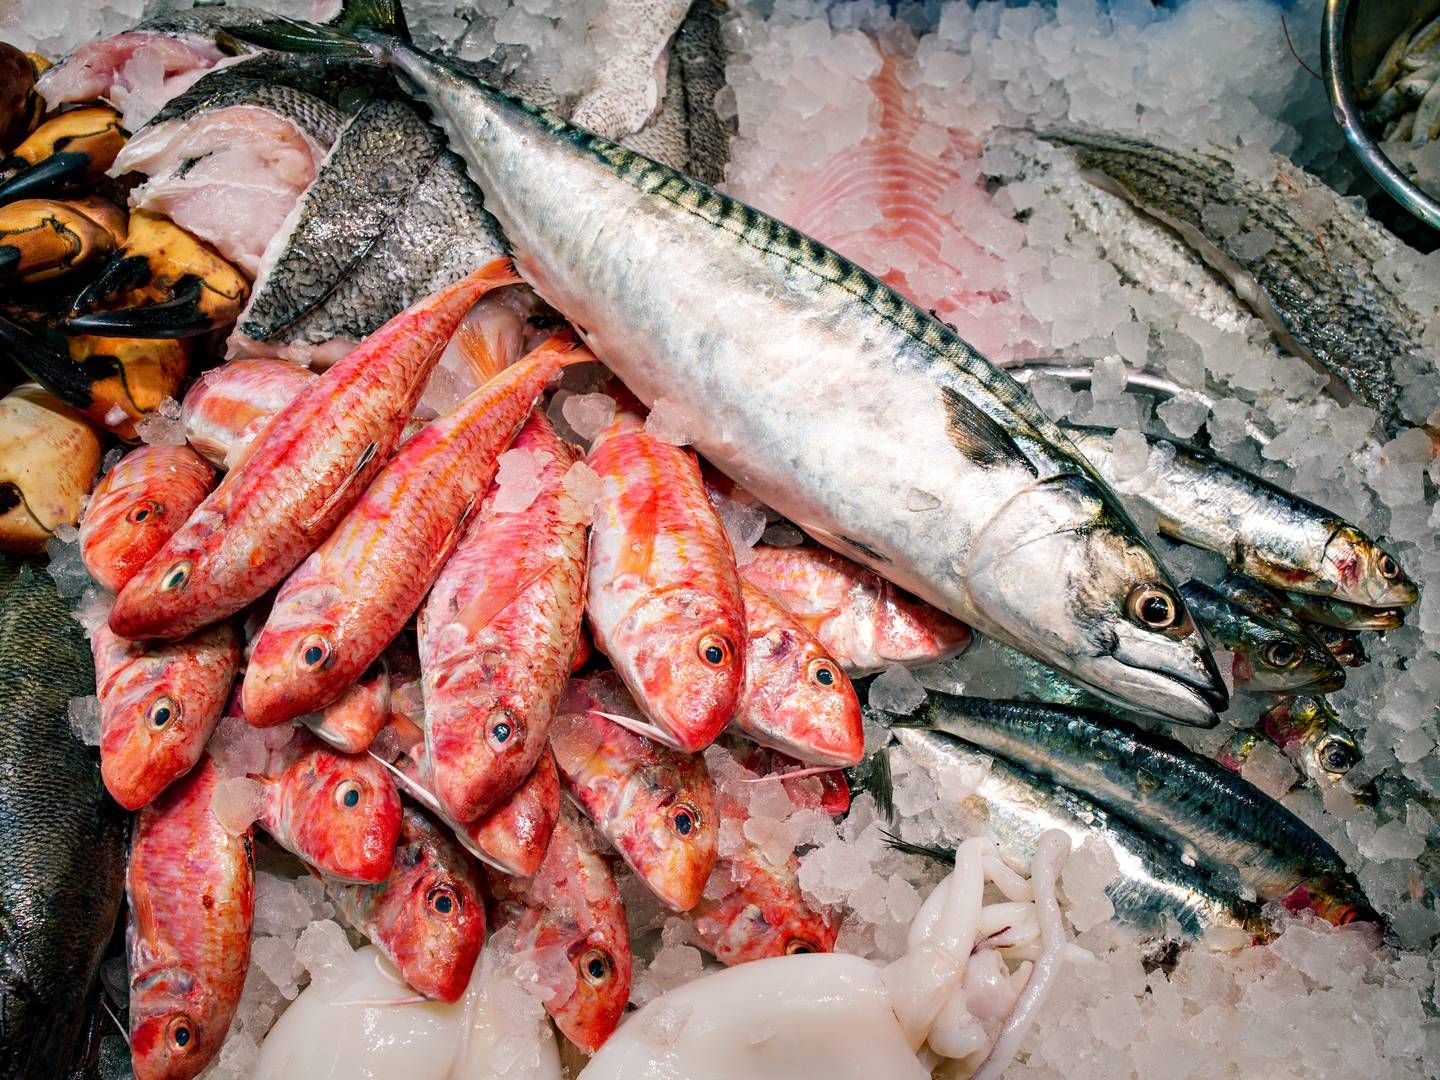 Kangamiut Seafood handler med fisk og skaldyr og er en del af den store, danske fiskekoncern Kangamiut Group. | Photo: Miriam Dalsgaard/Ritzau Scanpix.